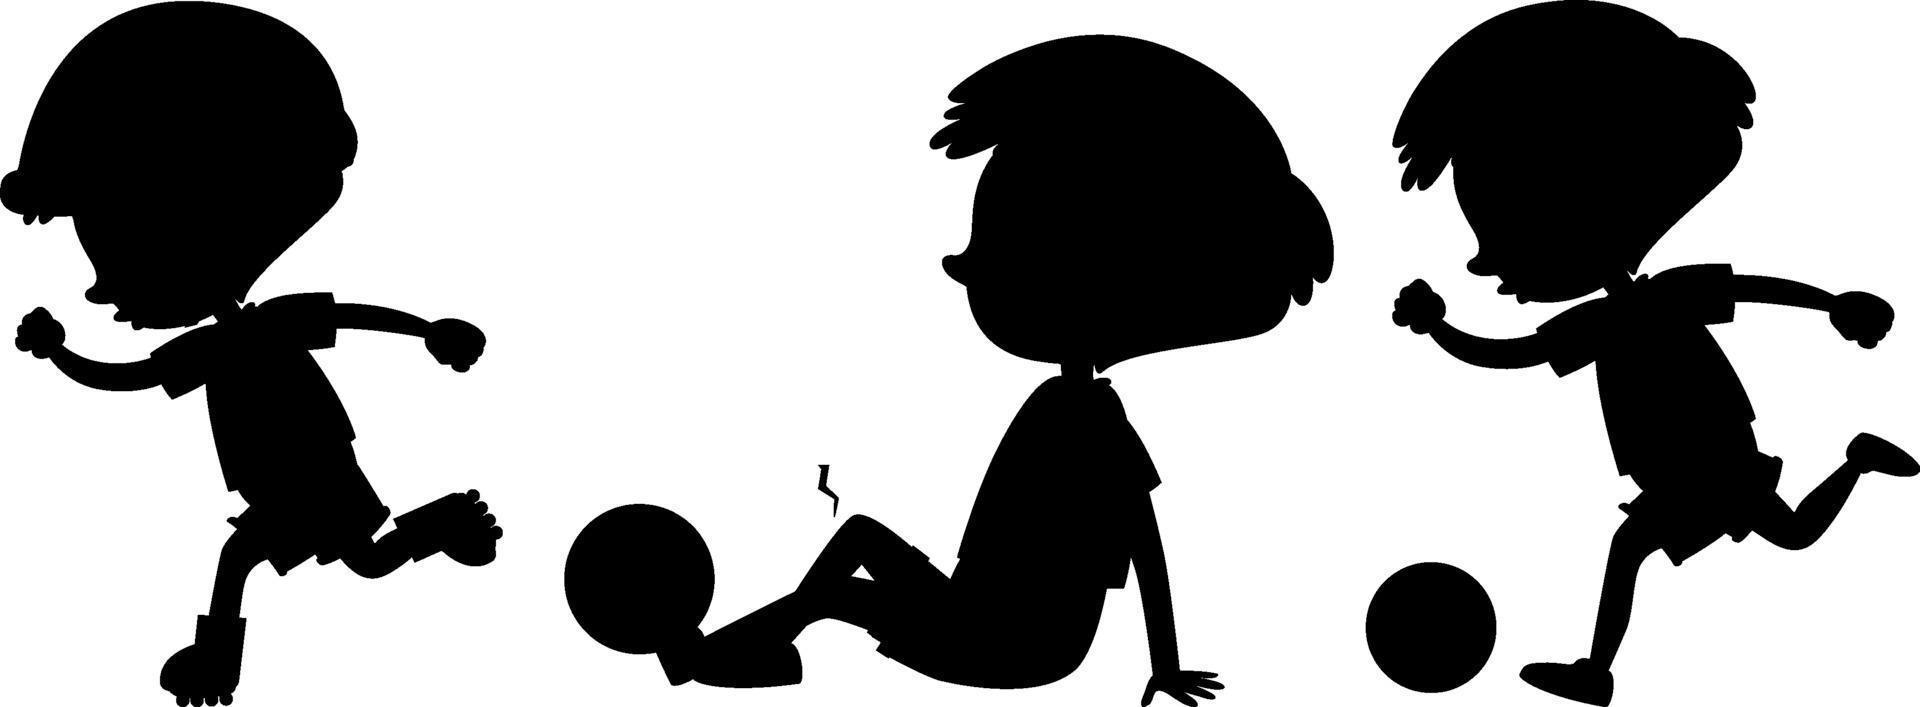 personaggio dei cartoni animati di bambini silhouette su sfondo bianco vettore